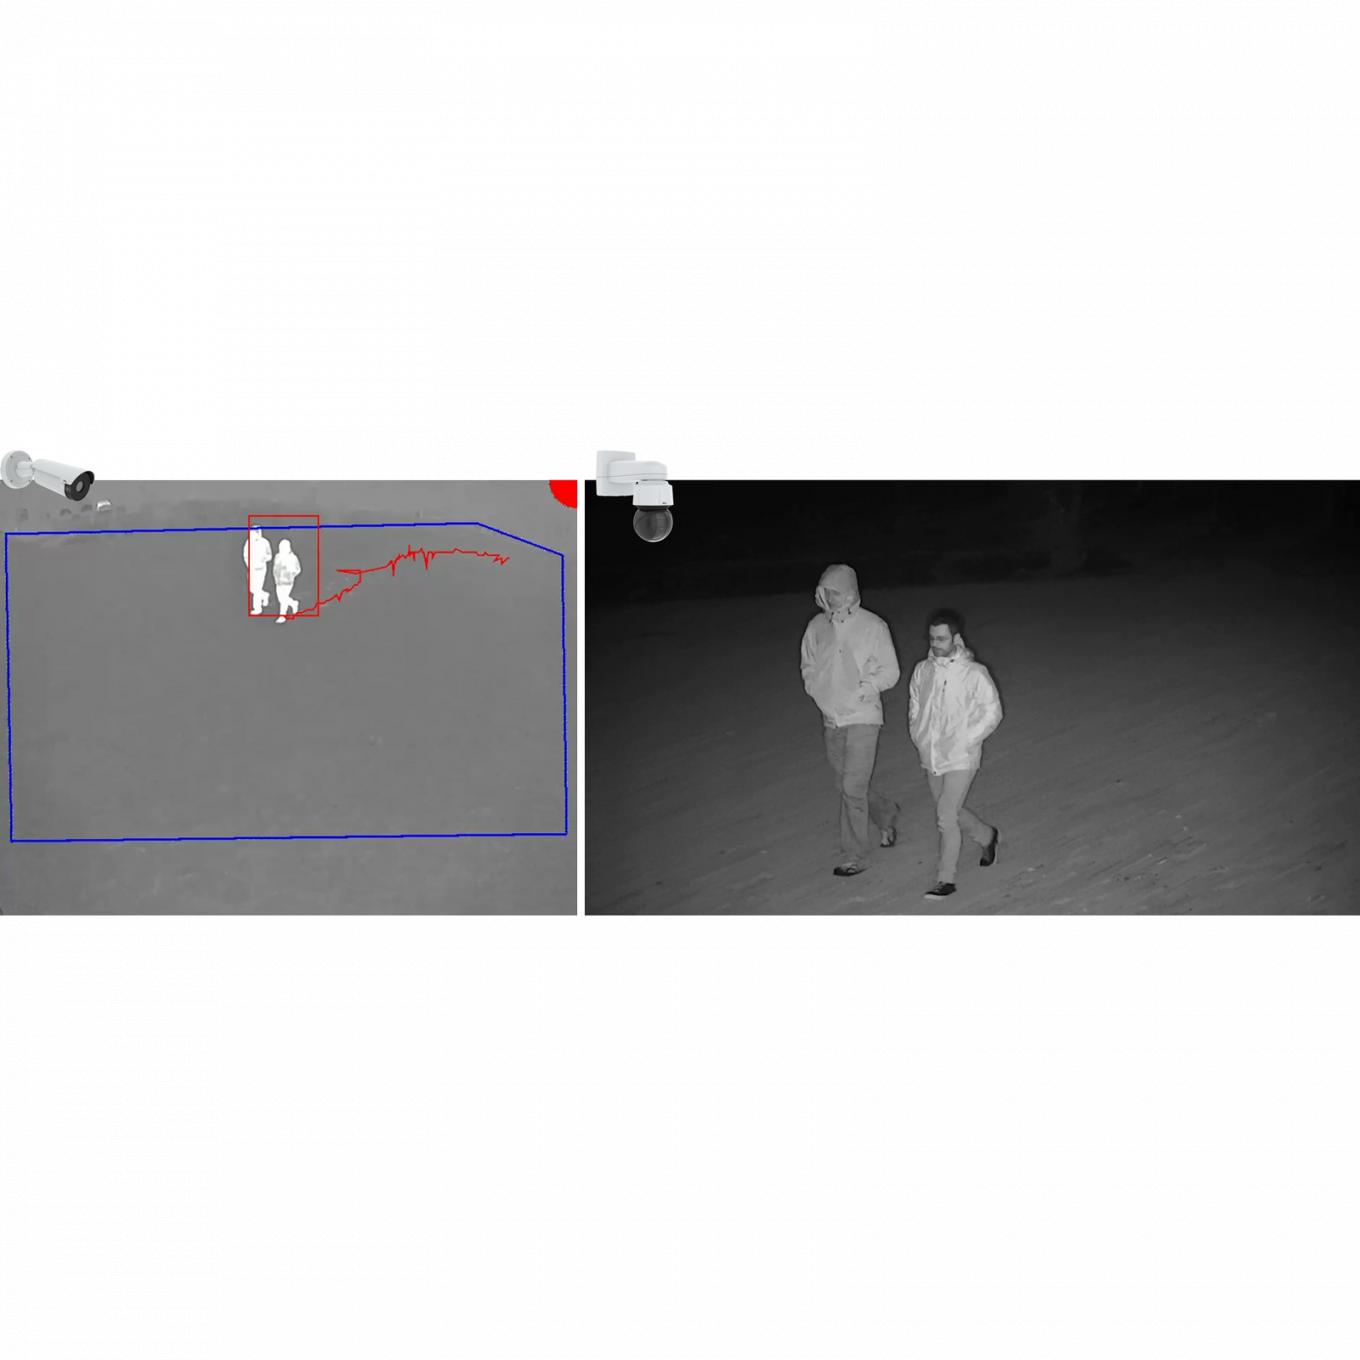 AXIS Perimeter Defender PTZ Autotracking, fotografia in bianco e nero di due uomini che camminano